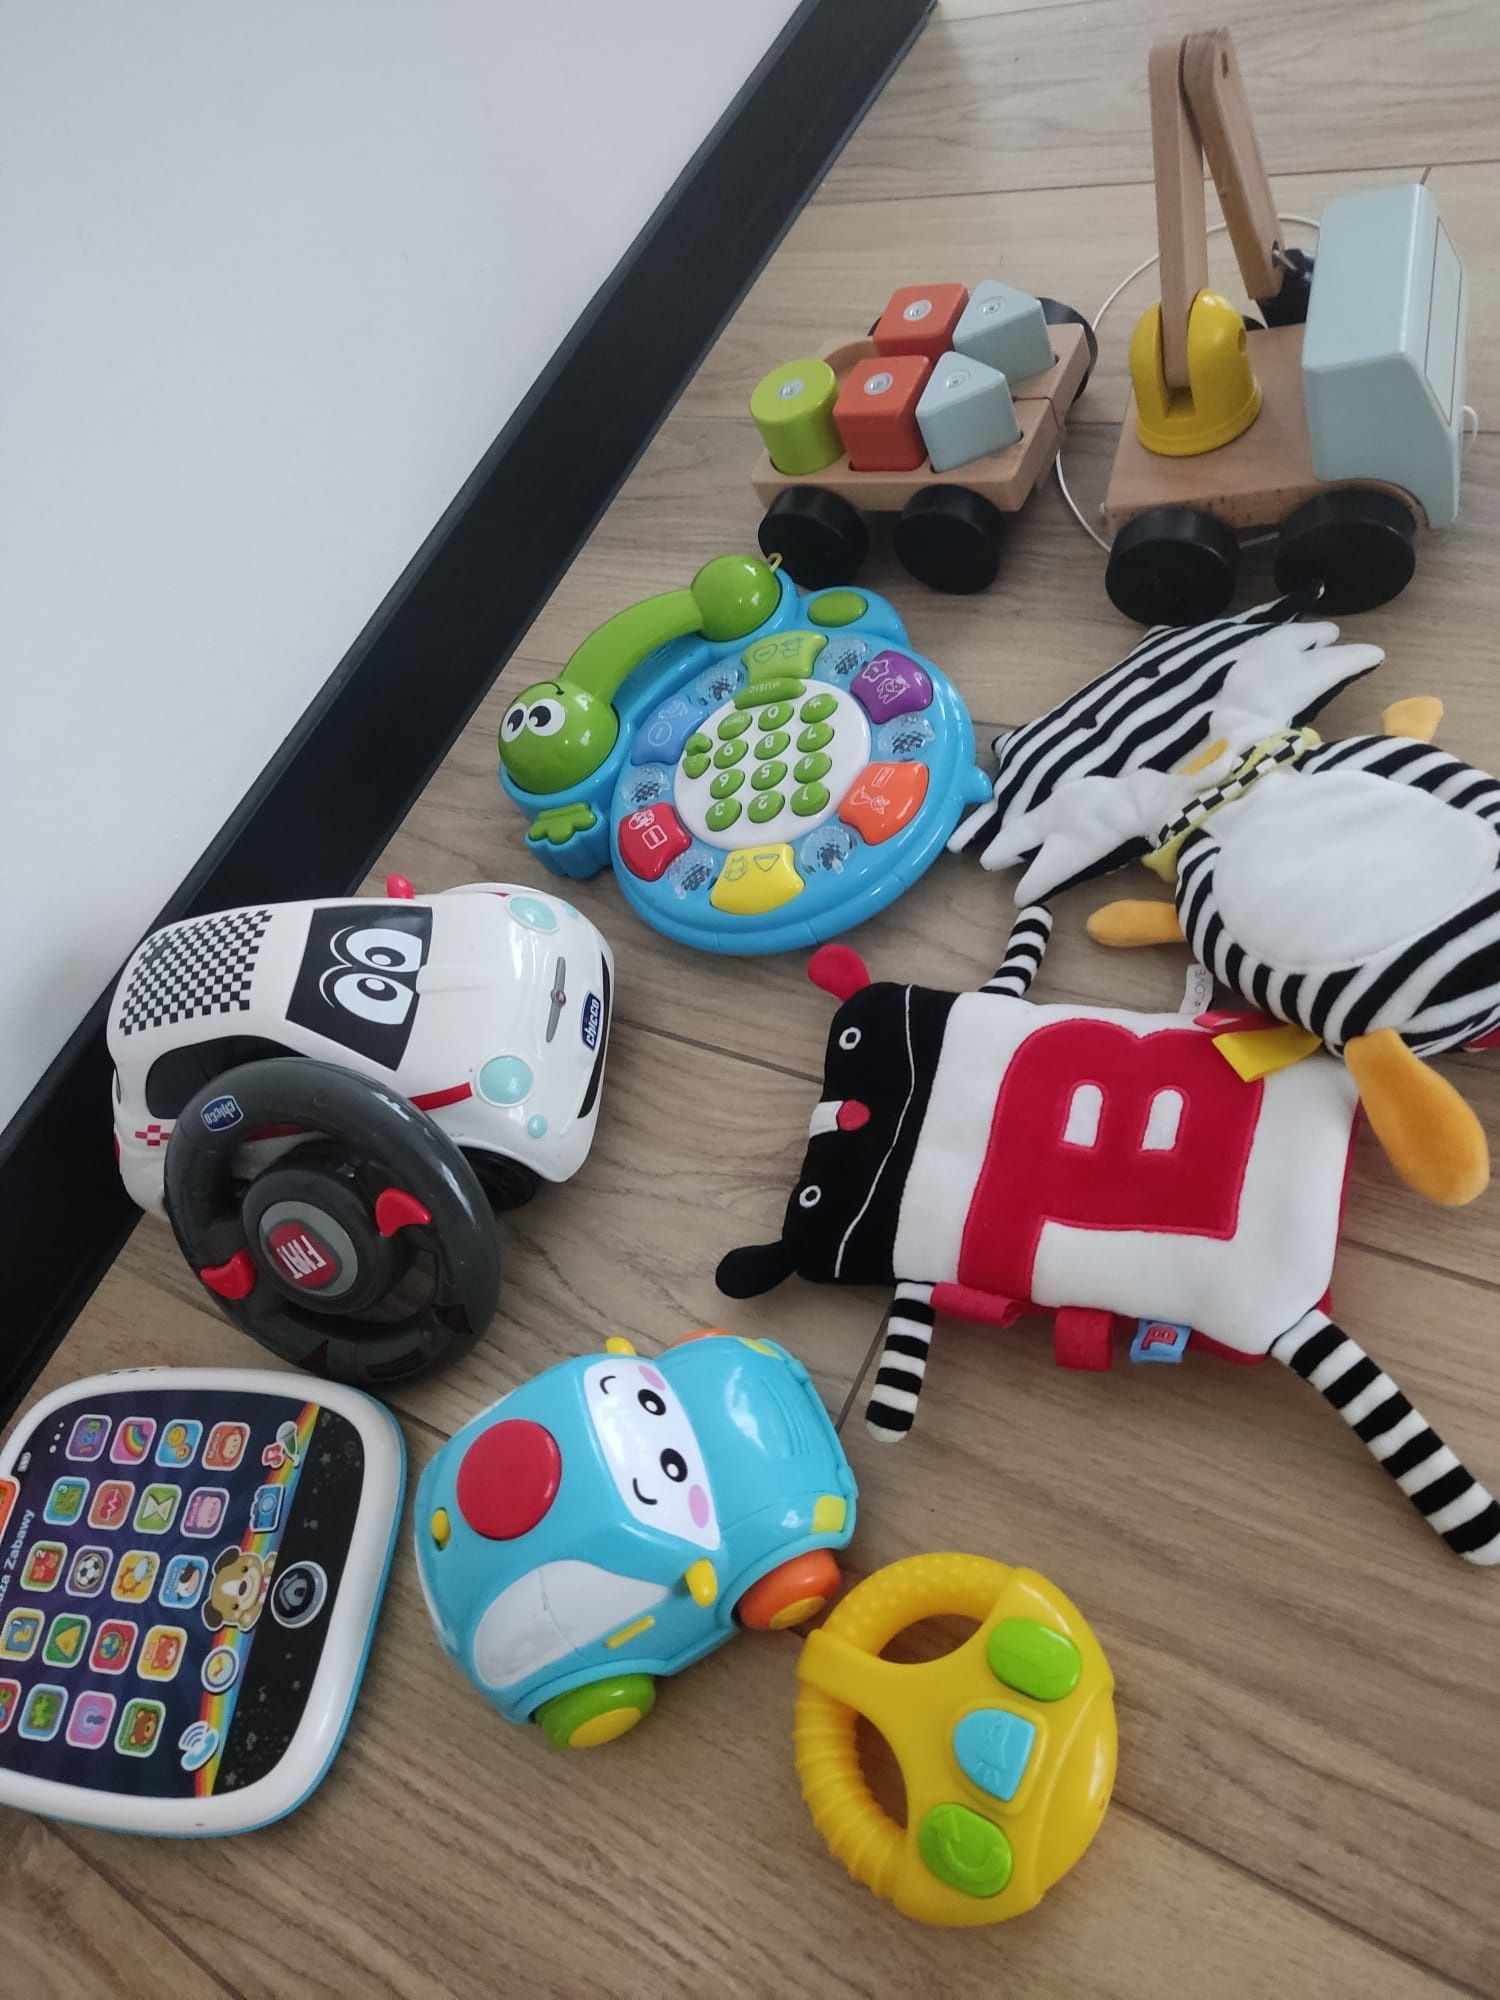 Zestaw zabawek dla dzieci, samochód zdalnie sterowany, tablet i inne